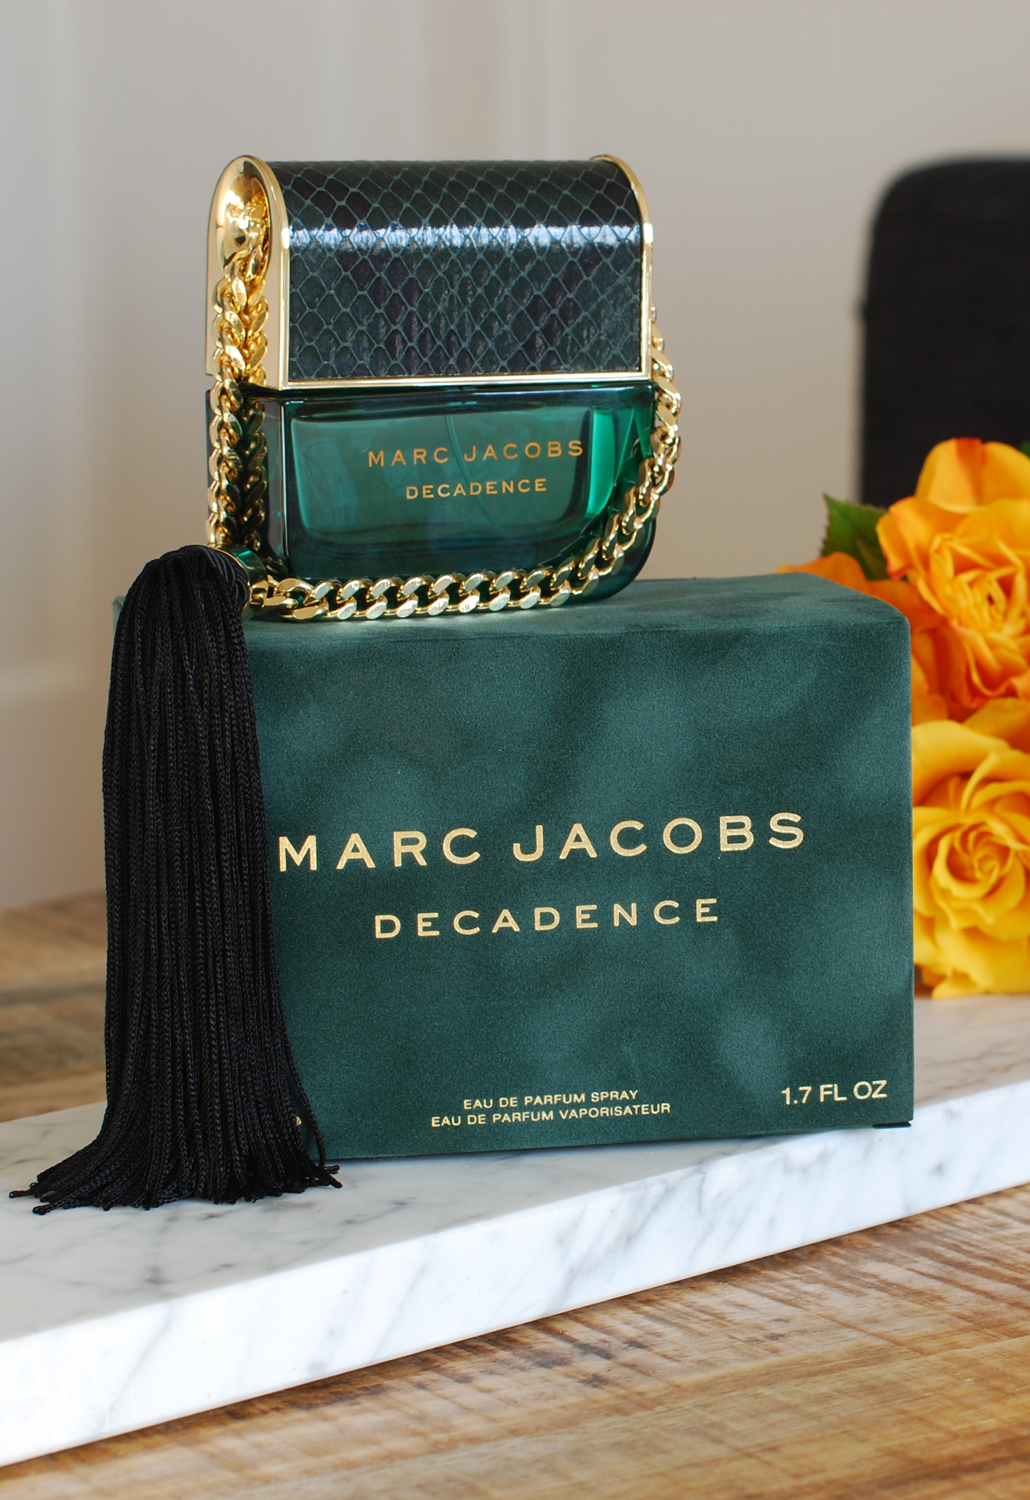 Marc Jacobs Decadence Eau de Parfum spray 50 ml MJ beauty #MJDecadence